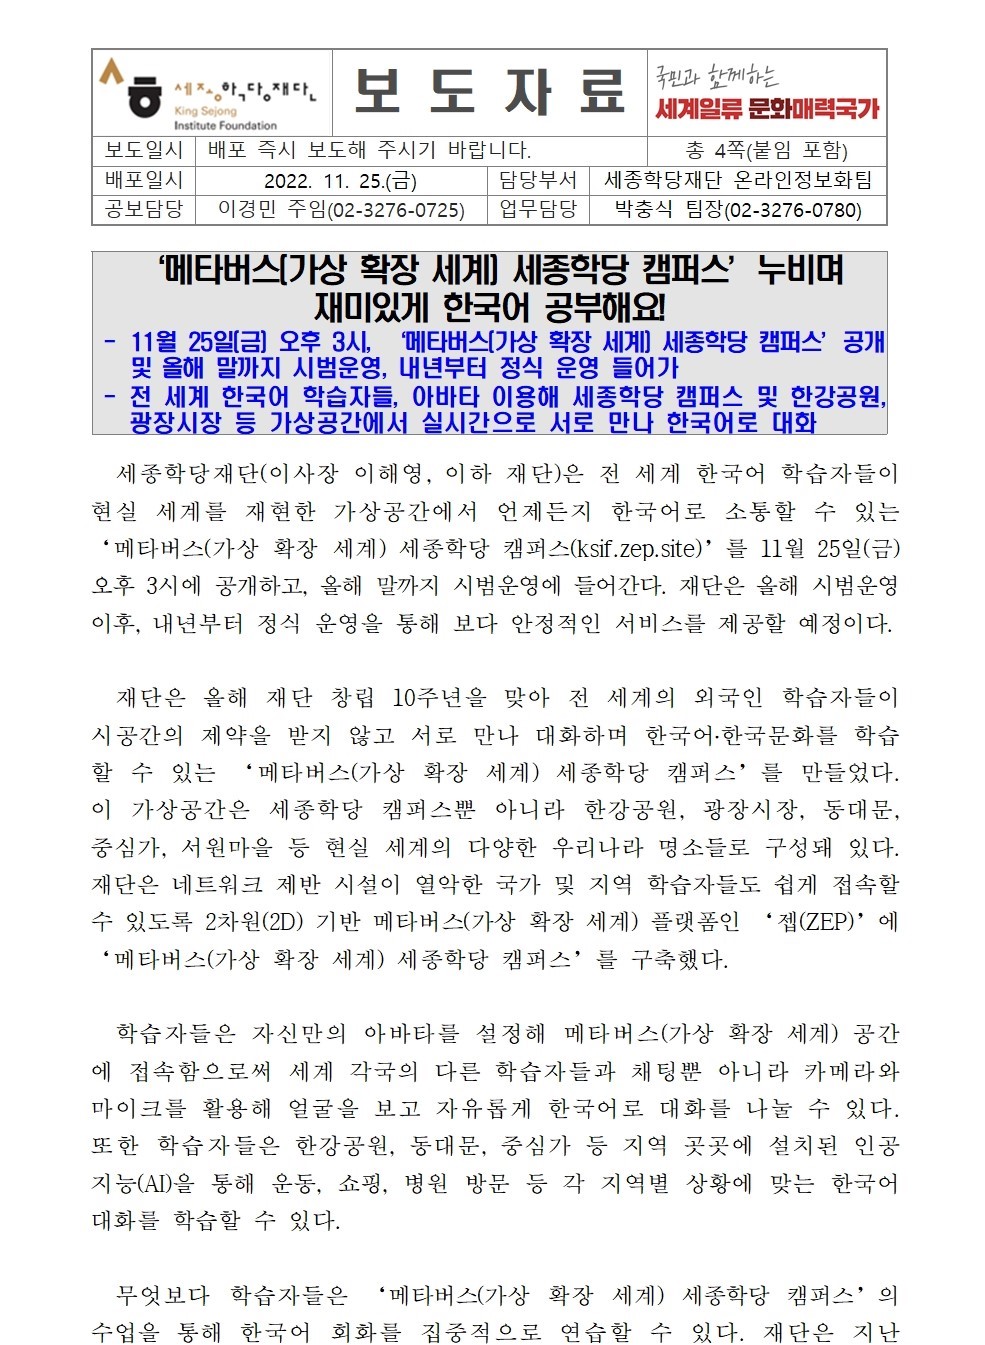 메타버스 세종학당 캠퍼스 누비며 재미있게 한국어 공부해요!(보도자료)001